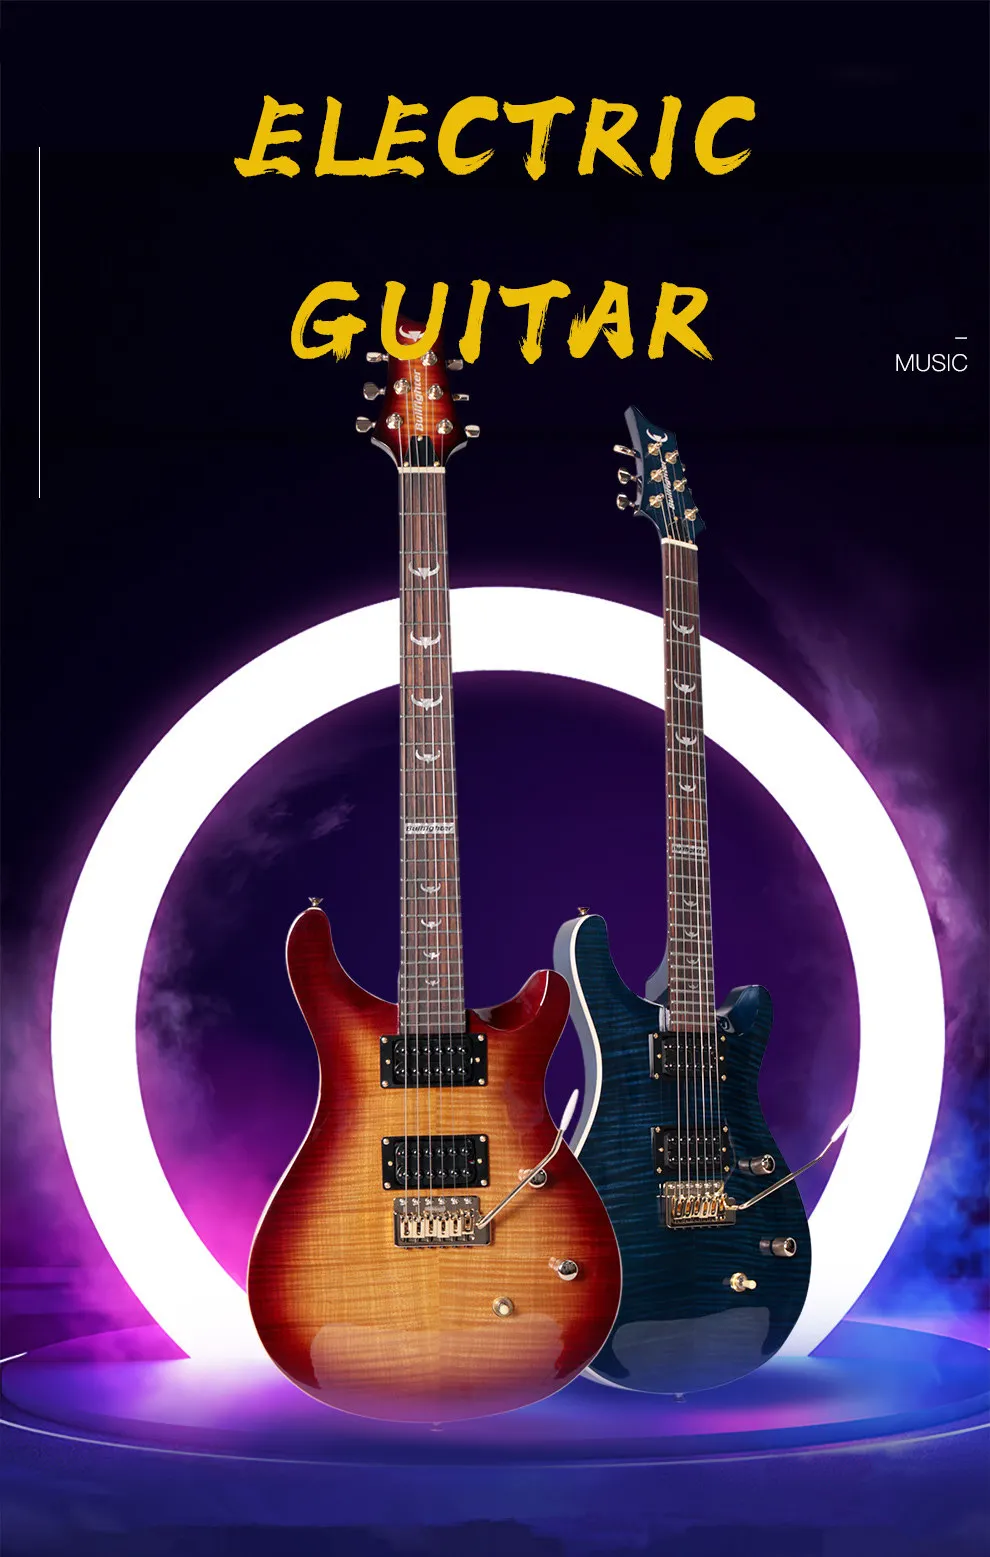 Электрическая гитара Bullfighter B180 с одним встряхиванием, профессиональный уровень, эффективная электрическая гитара